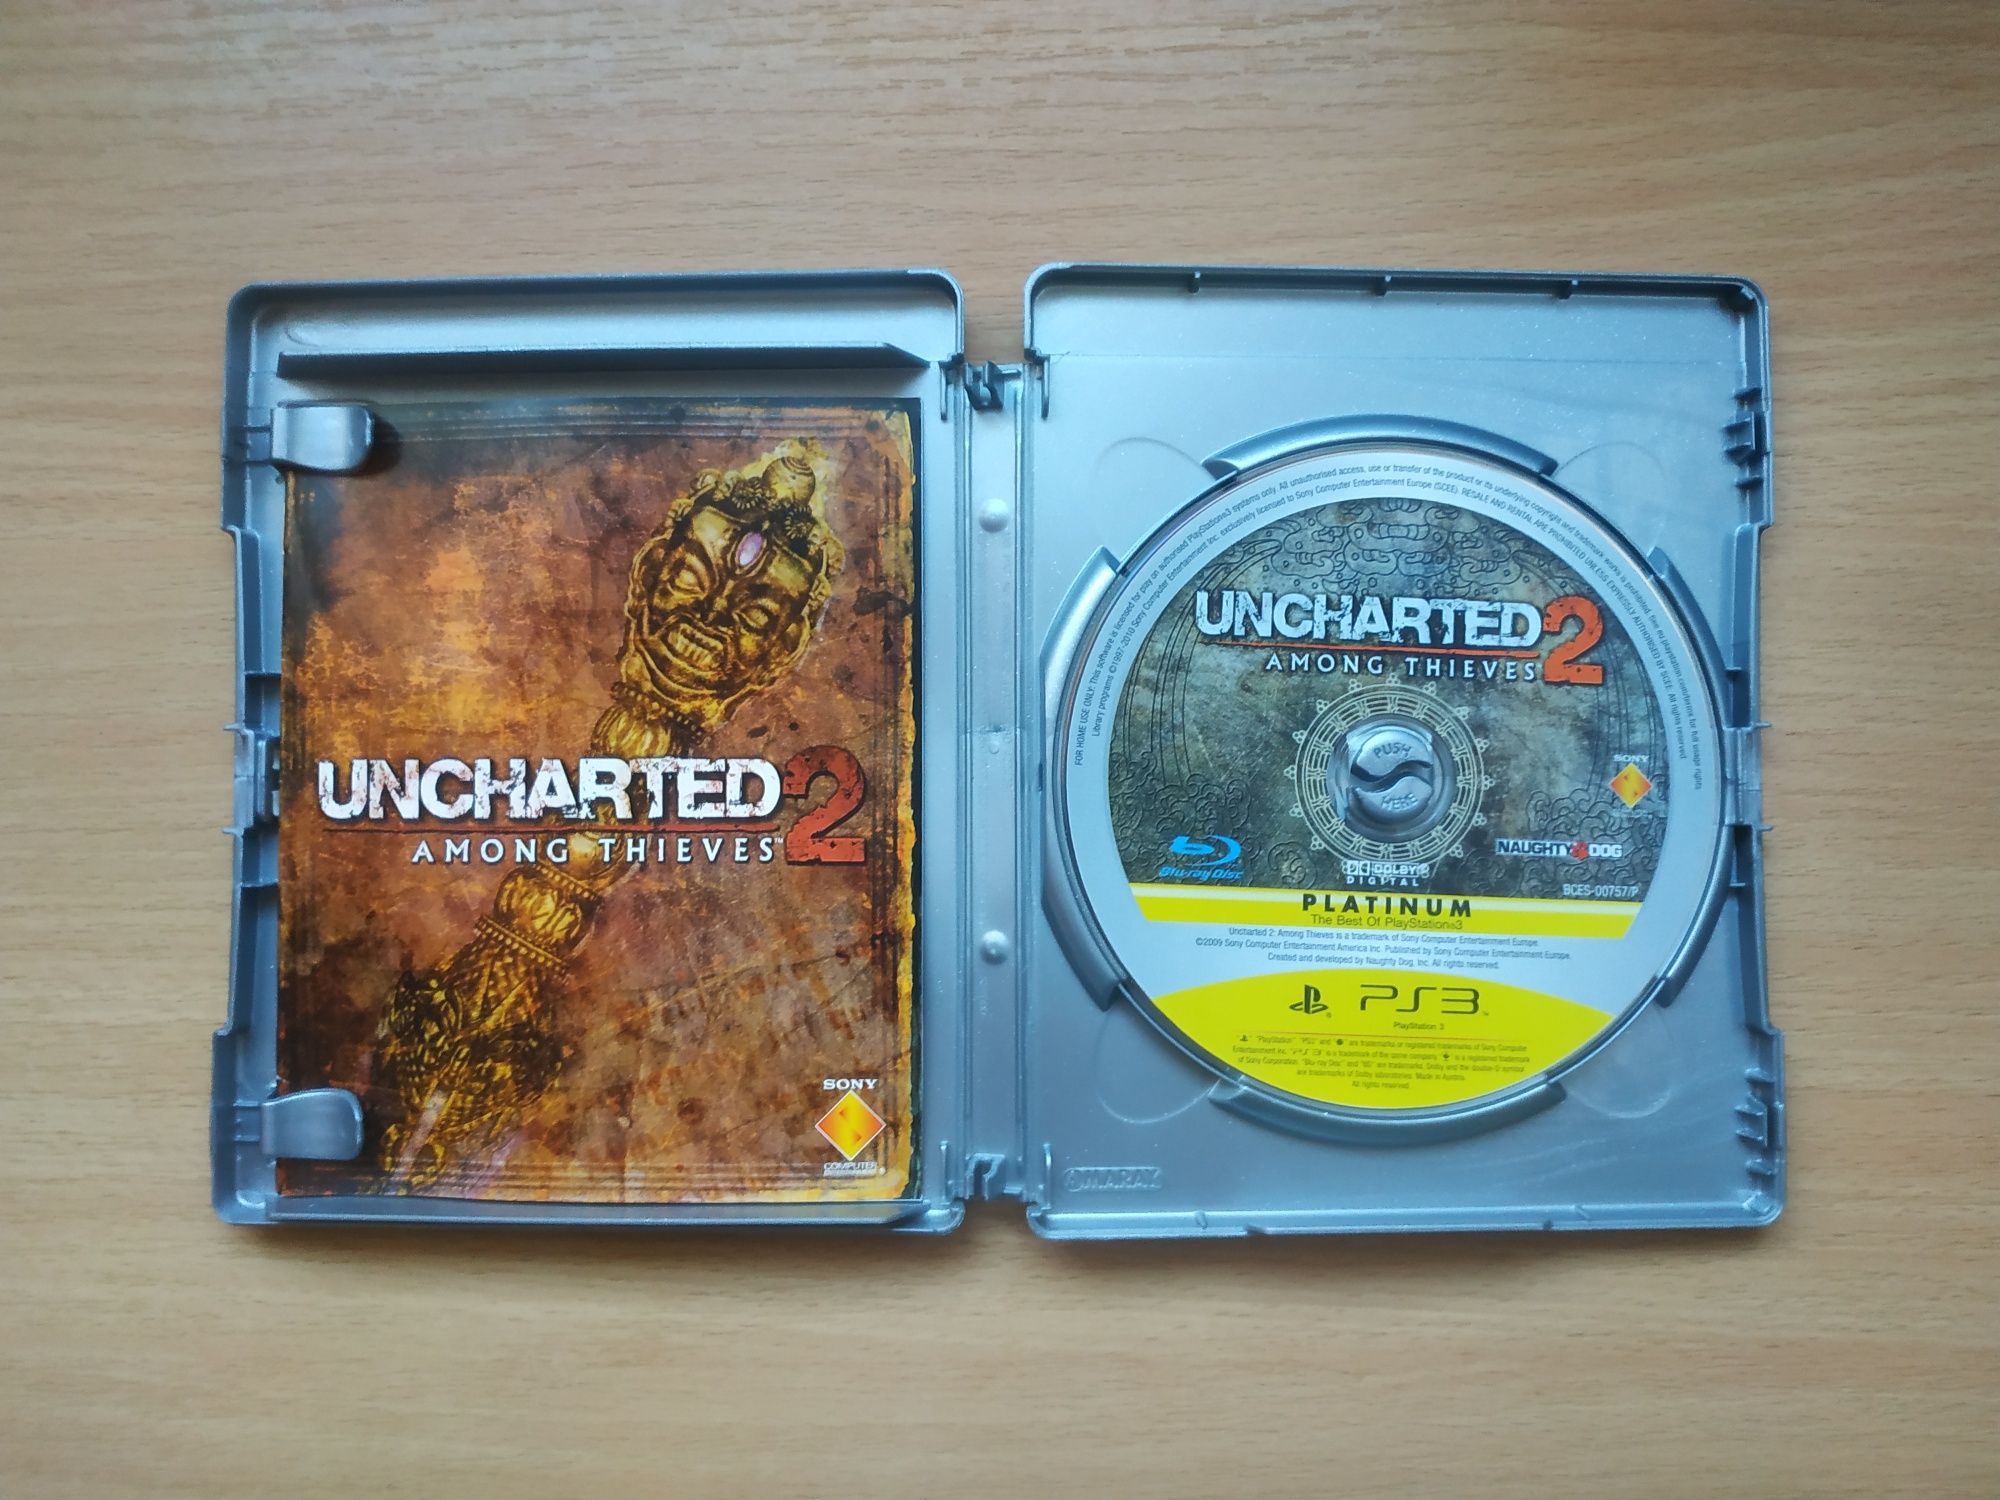 Uncharted 2 ps3, pl, stan bardzo dobry, wysyłka olx